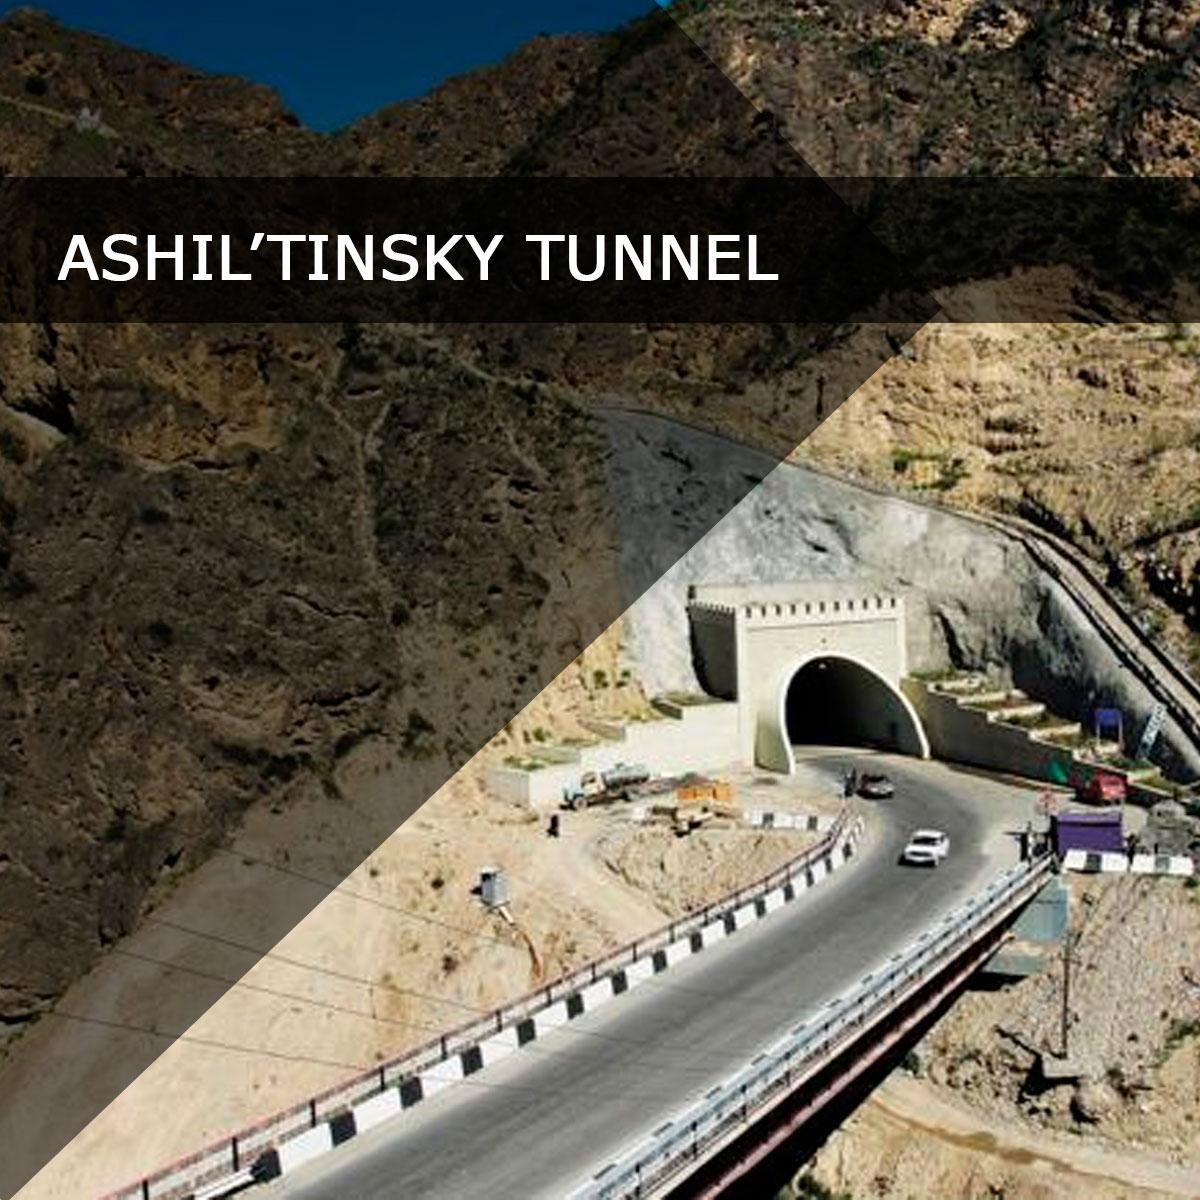 Ashil’tinsky tunnel